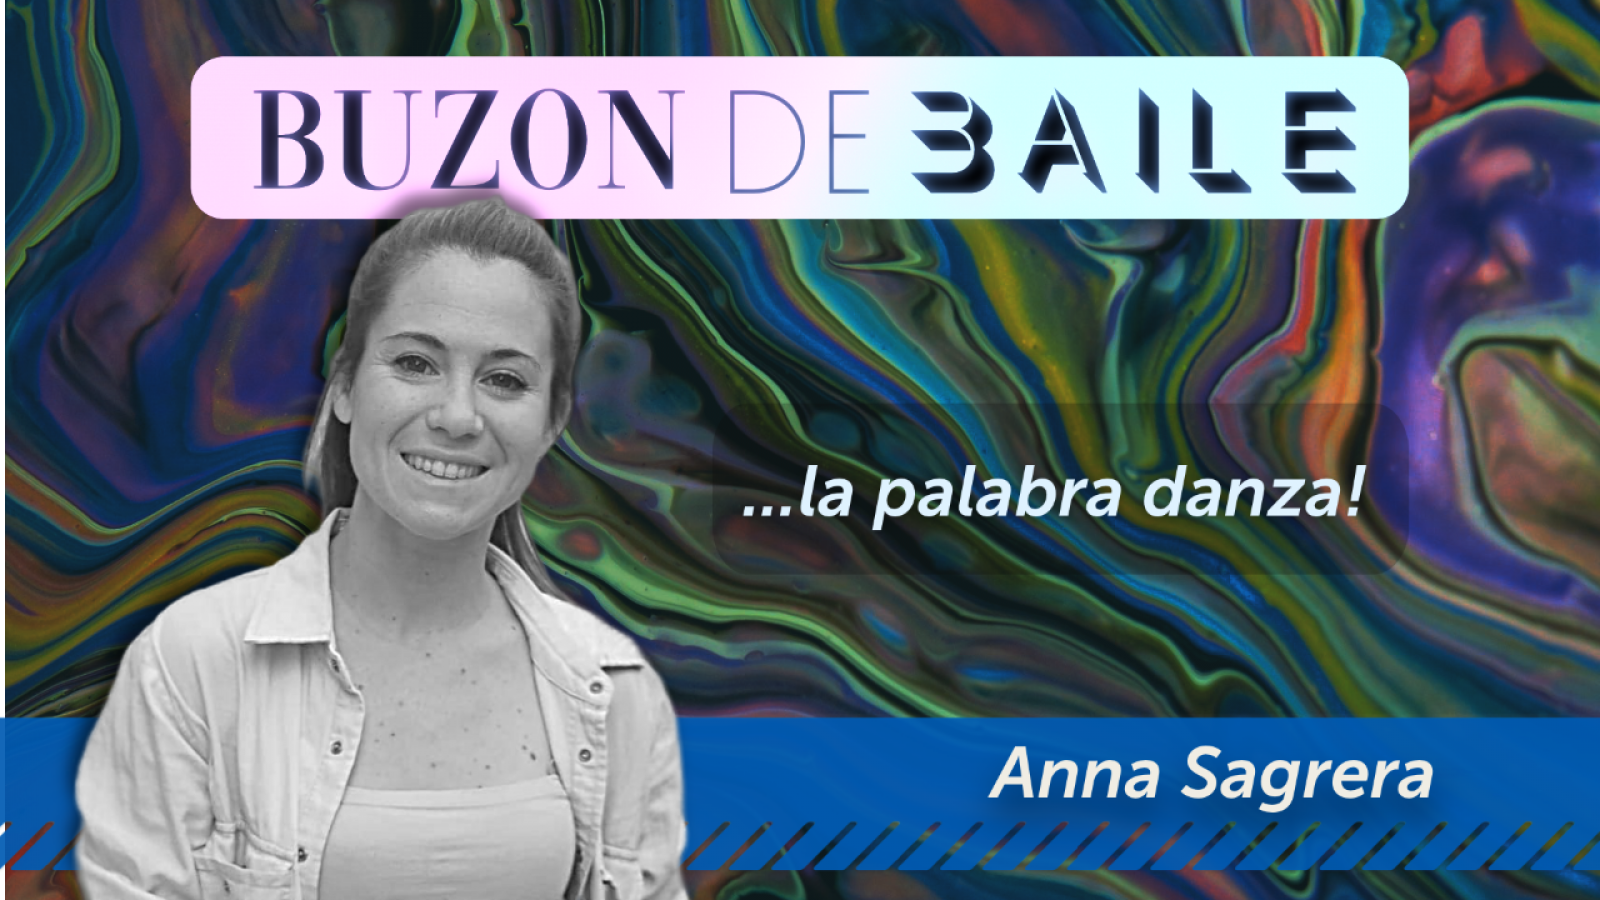 Buzón de Baile - Anna Sagrera interpreta la palabra 'Alborozo' - Ver ahora